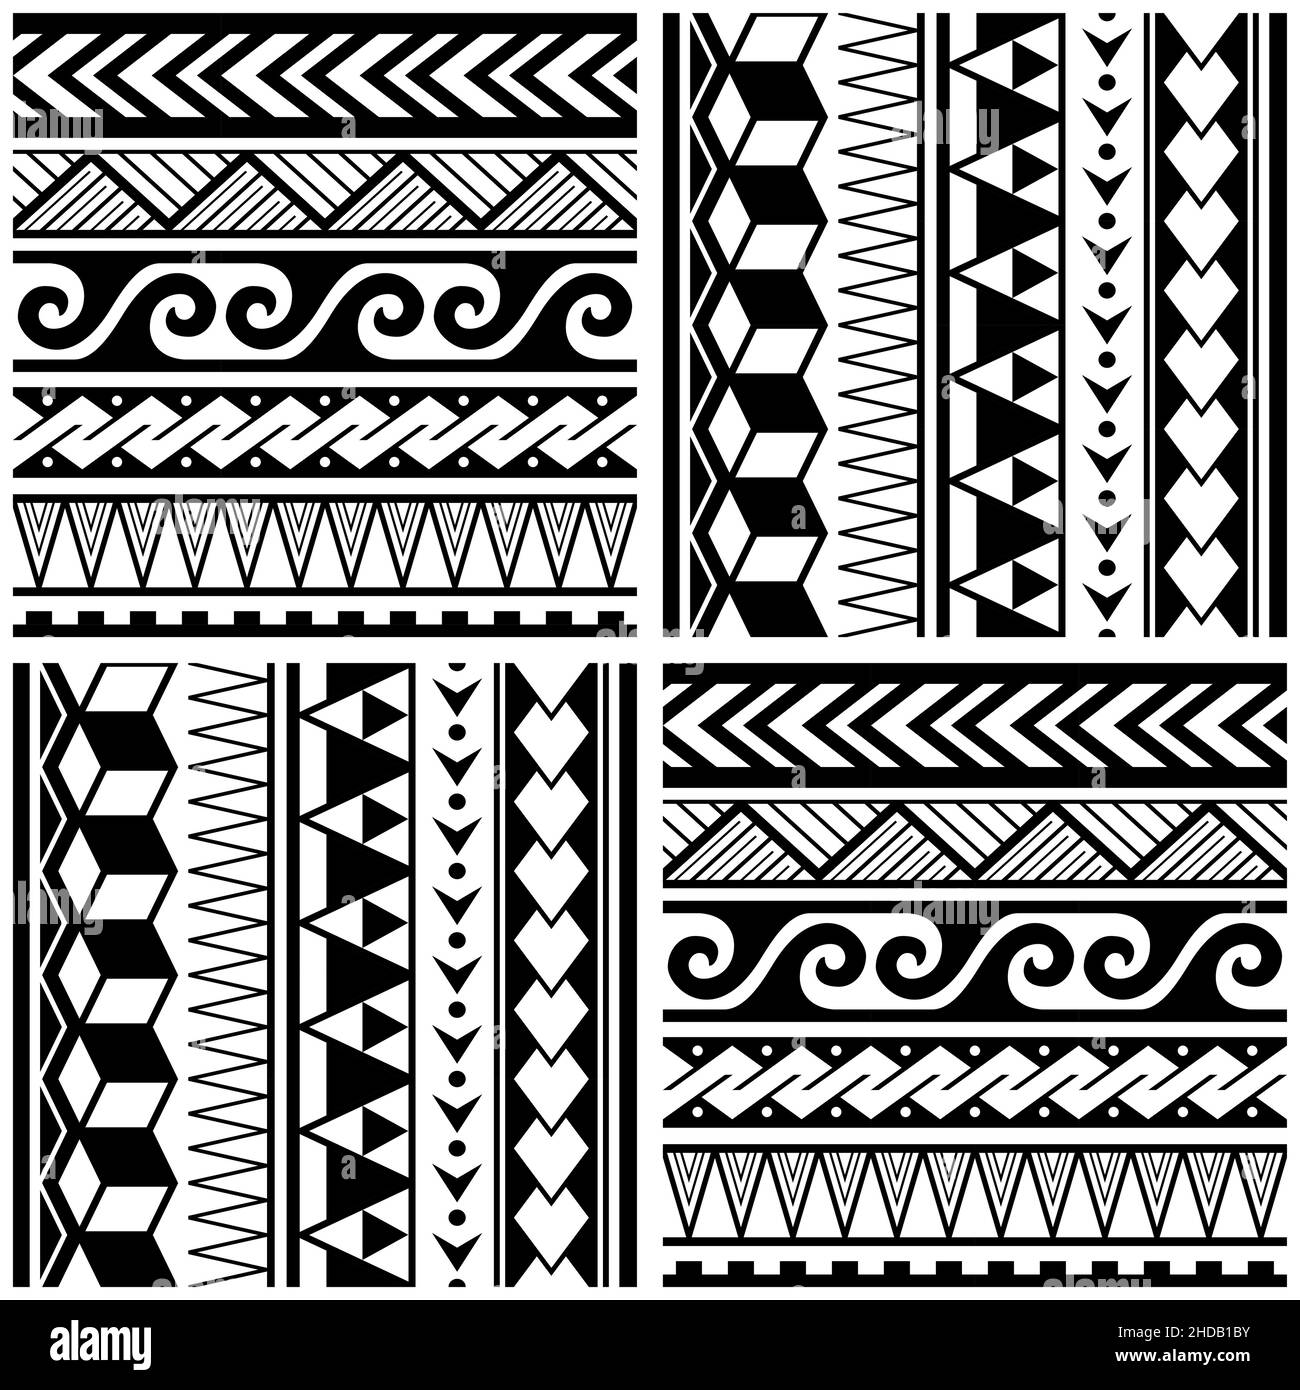 Polynesisches nahtloses Vektor-Muster mit geometrischen Formen - Dreiecke, Wellen-Zick-Zack, ethnischer hawaianischer Textil- oder Stoffdruck in Schwarz und Whtie Stock Vektor